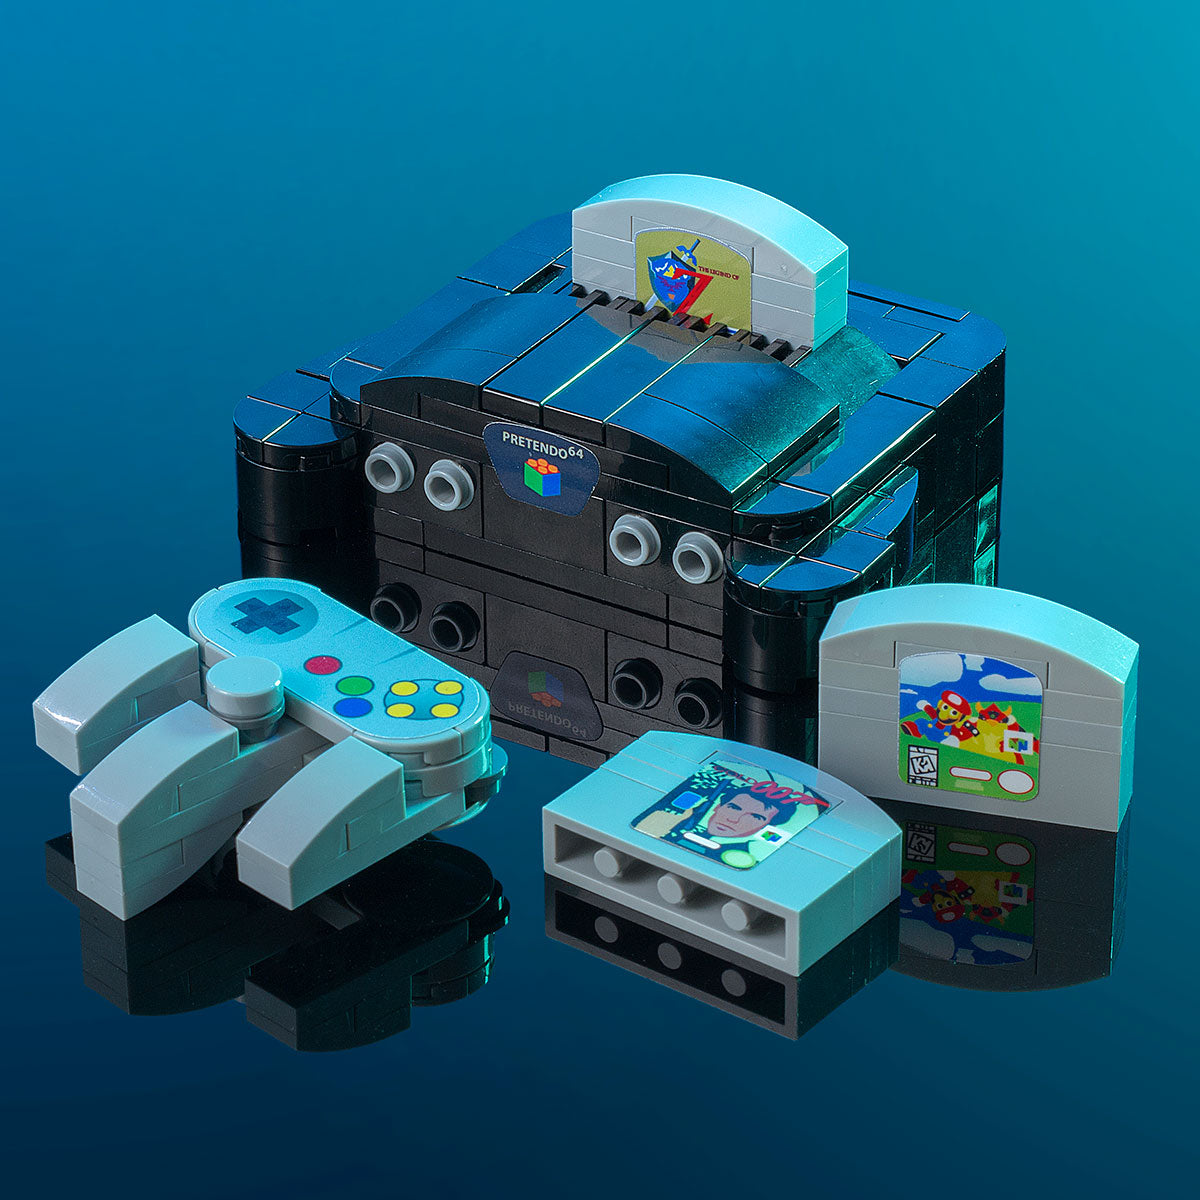 custom-lego-nintendo-64-console-moc.jpg